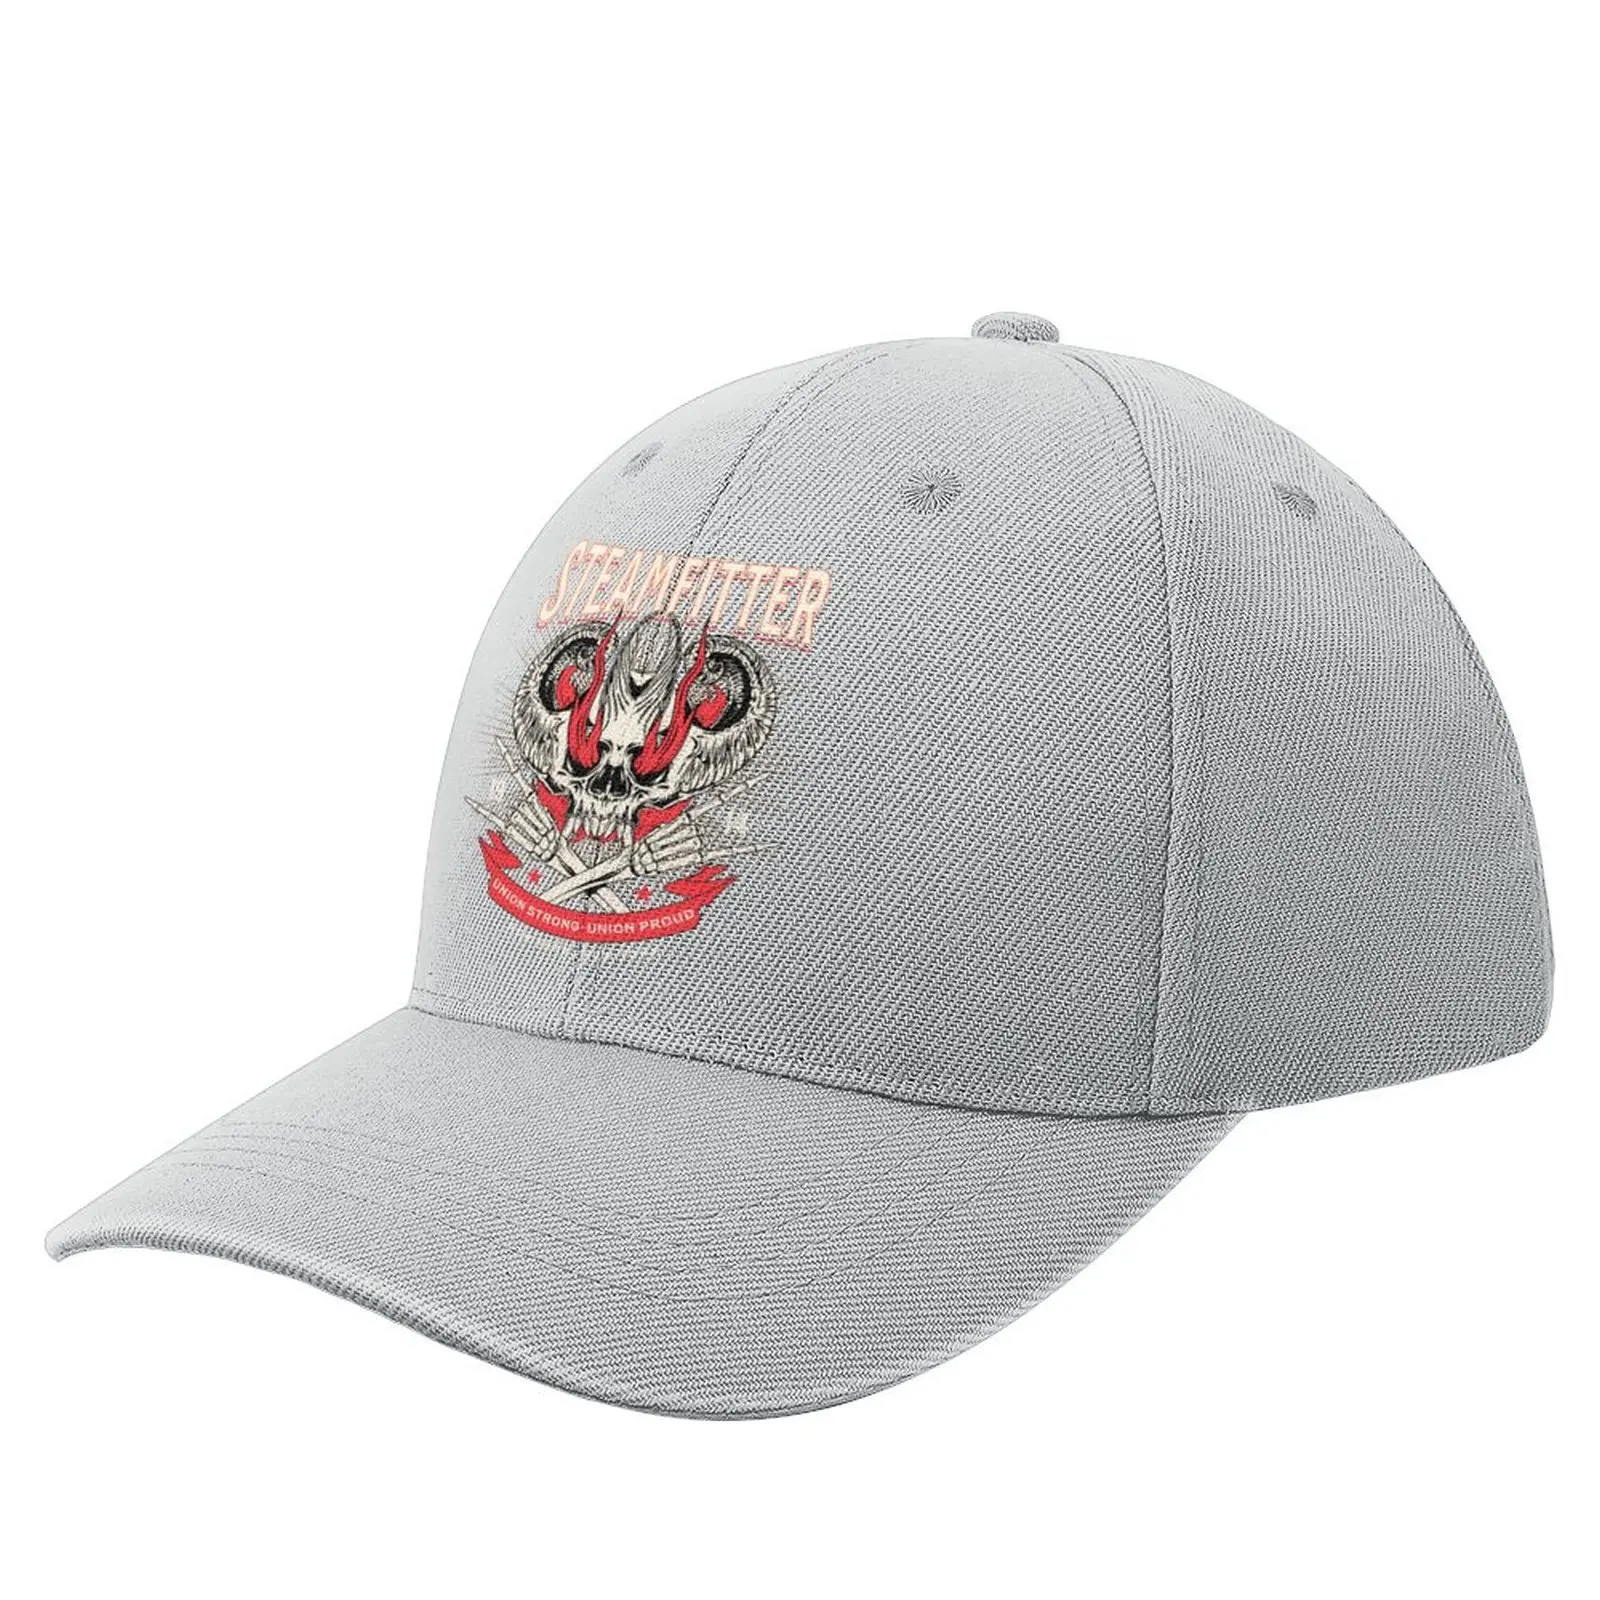 

Steamfitter Hell Skulls Union Proud | Steamfitters | Pipefitters Baseball Cap Military Cap Man Hat For Women Men'S